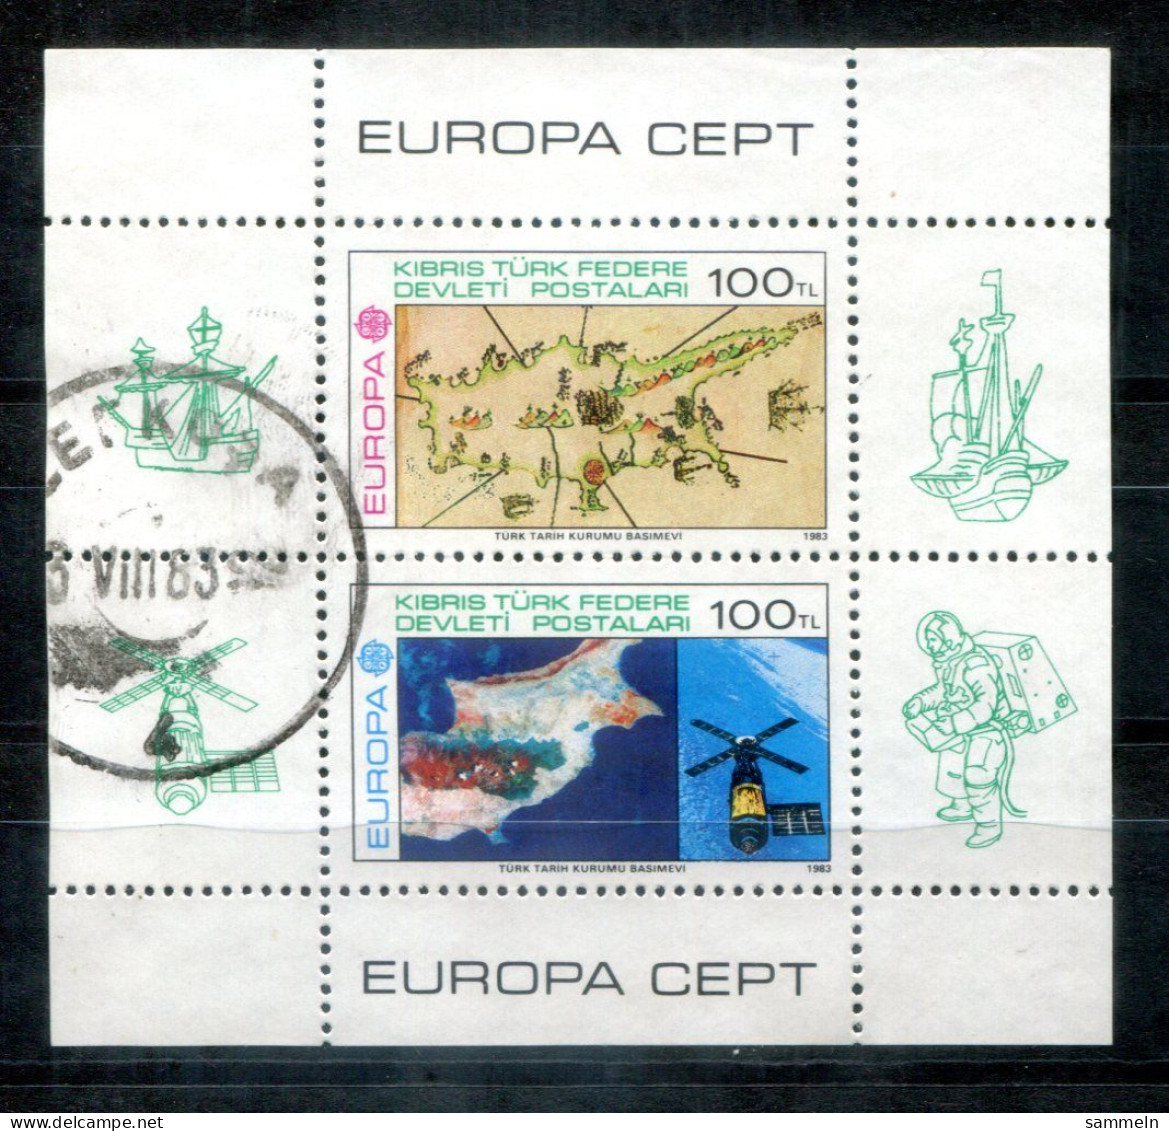 TÜRKISCH-ZYPERN Block 4, Bl.4 Canc. - Europa CEPT 19853, Weltraum. Space, Espace - TURKISH CYPRUS / CHYPRE TURQUE - Oblitérés